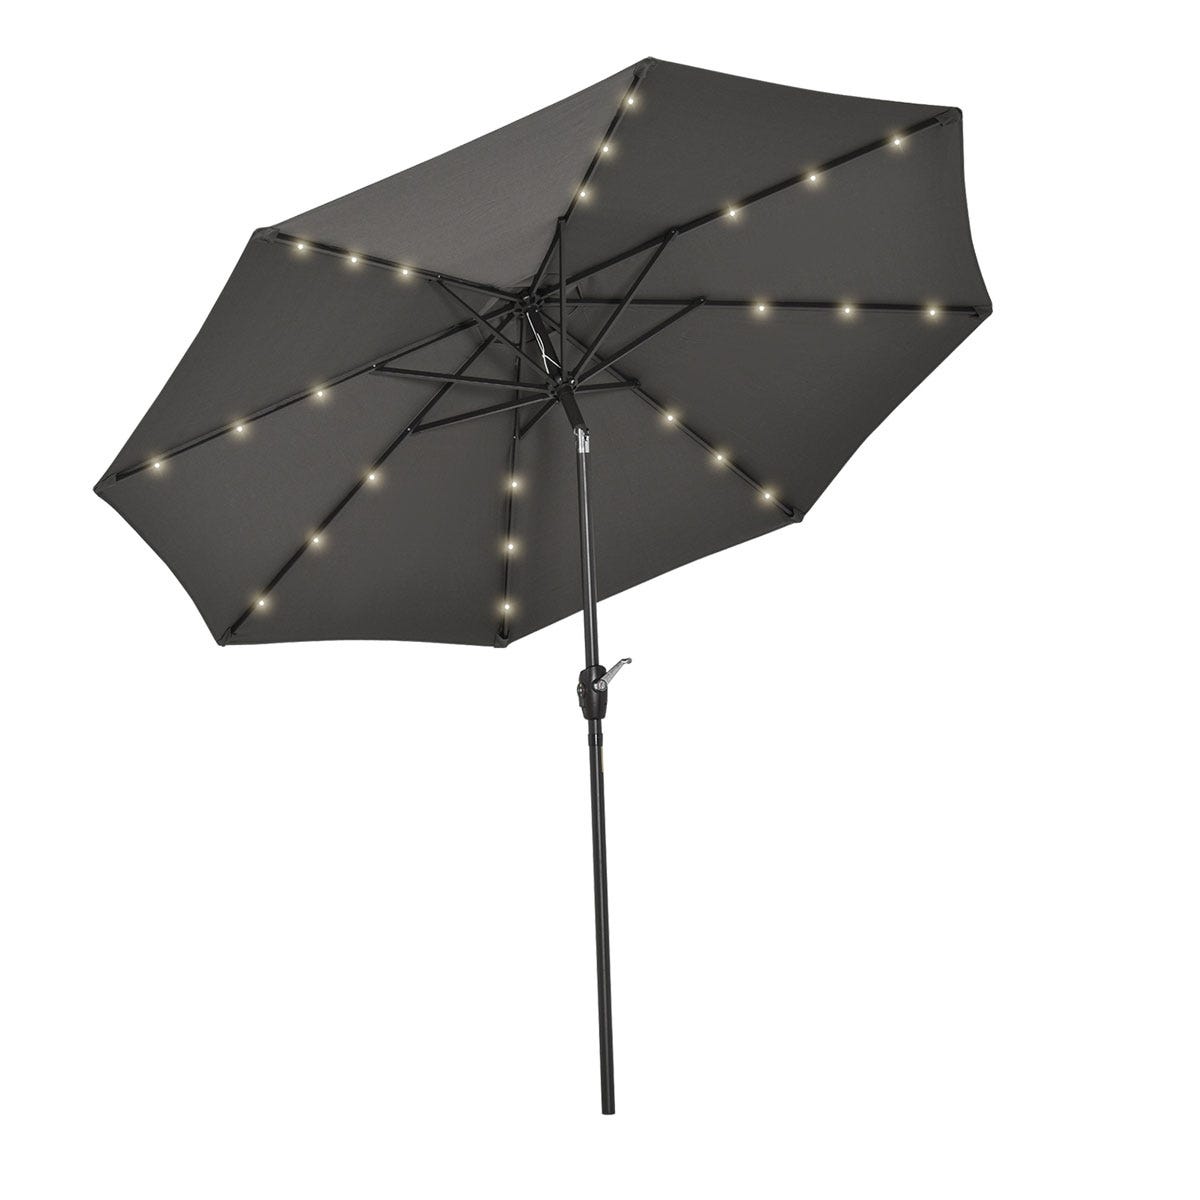 Outsunny Garden Parasol Outdoor Tilt Sun Umbrella Led Light Hand Crank Grey